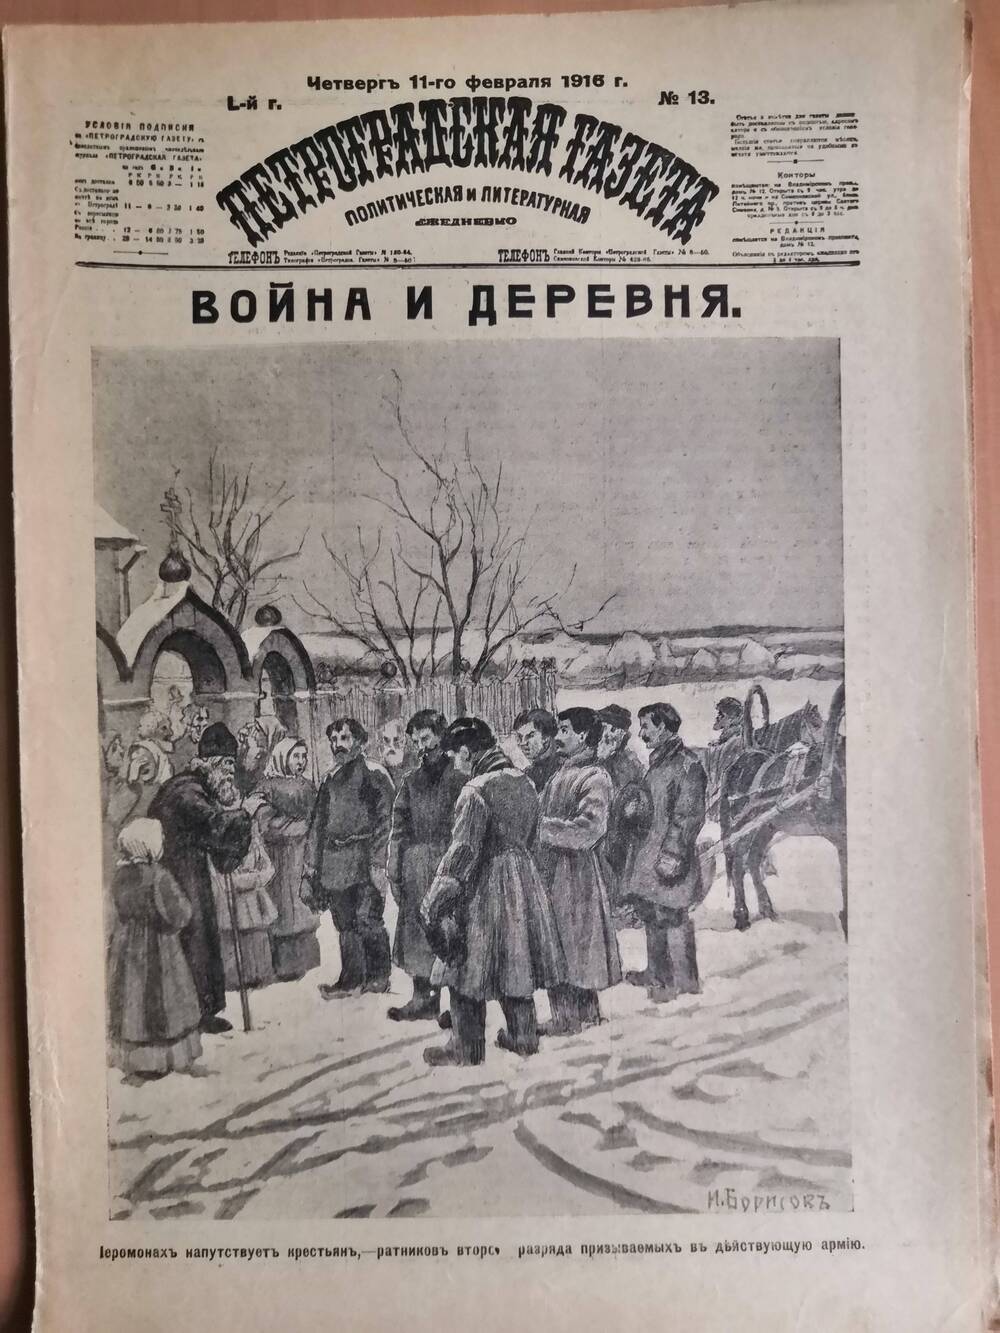 Петроградская газета, политическая и литературная №13, от четверга 11-го февраля 1916 г.